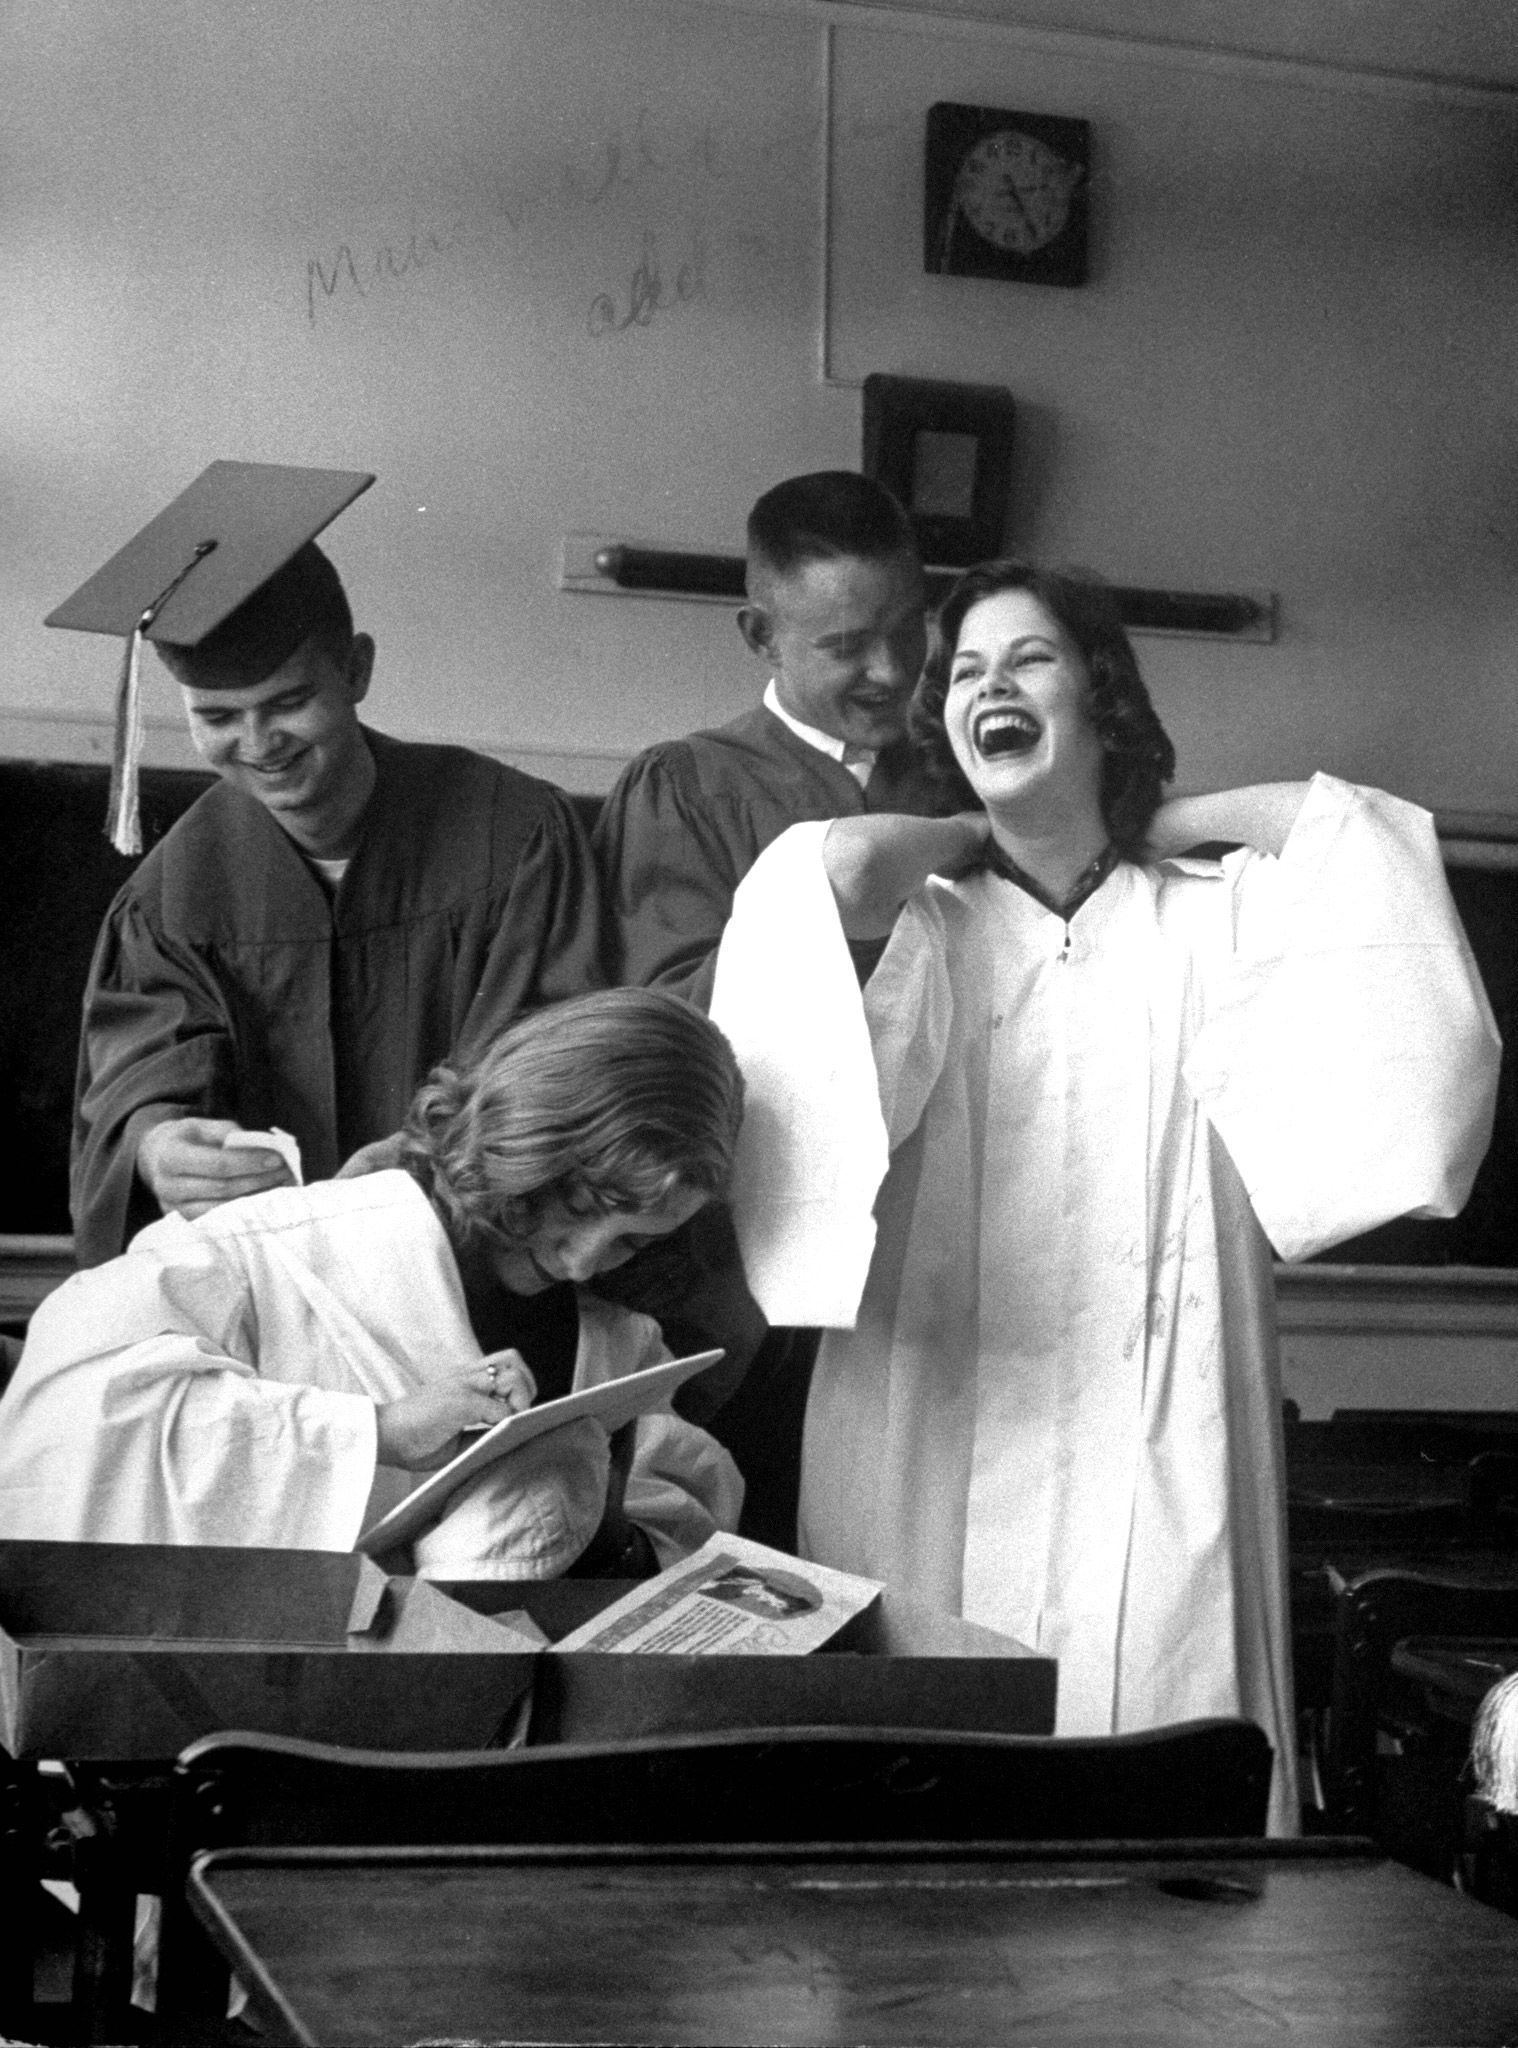 Hempstead High School class of 1958.